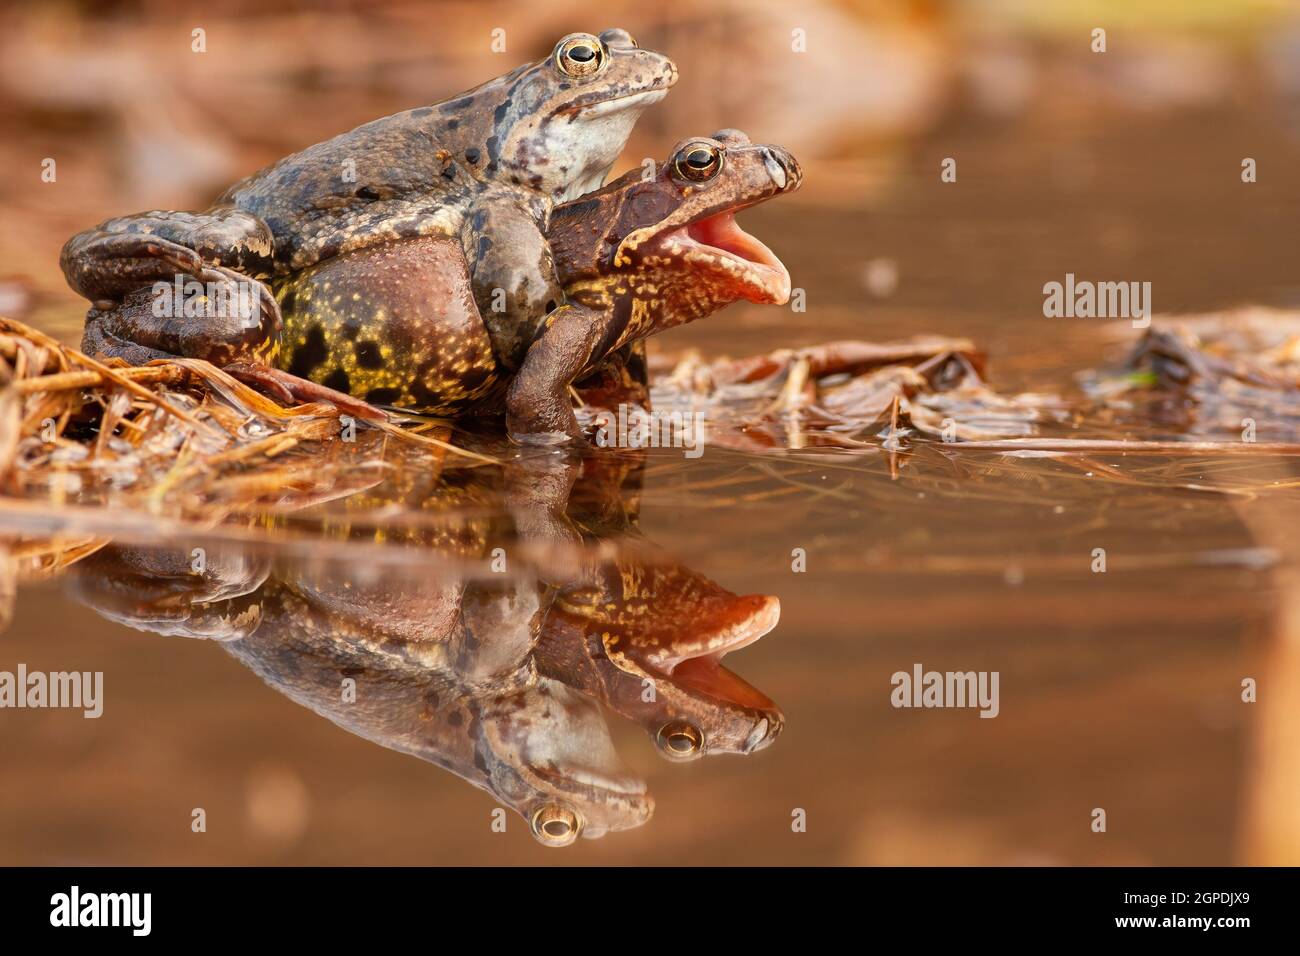 Zwei gemeinsame Frosch Paarung in Teich im Frühling Natur . Amphibienpaar,  das sich im Sumpf mit Reflexion auf der Wasseroberfläche reproduziert.  Wildtiere copulatin Stockfotografie - Alamy